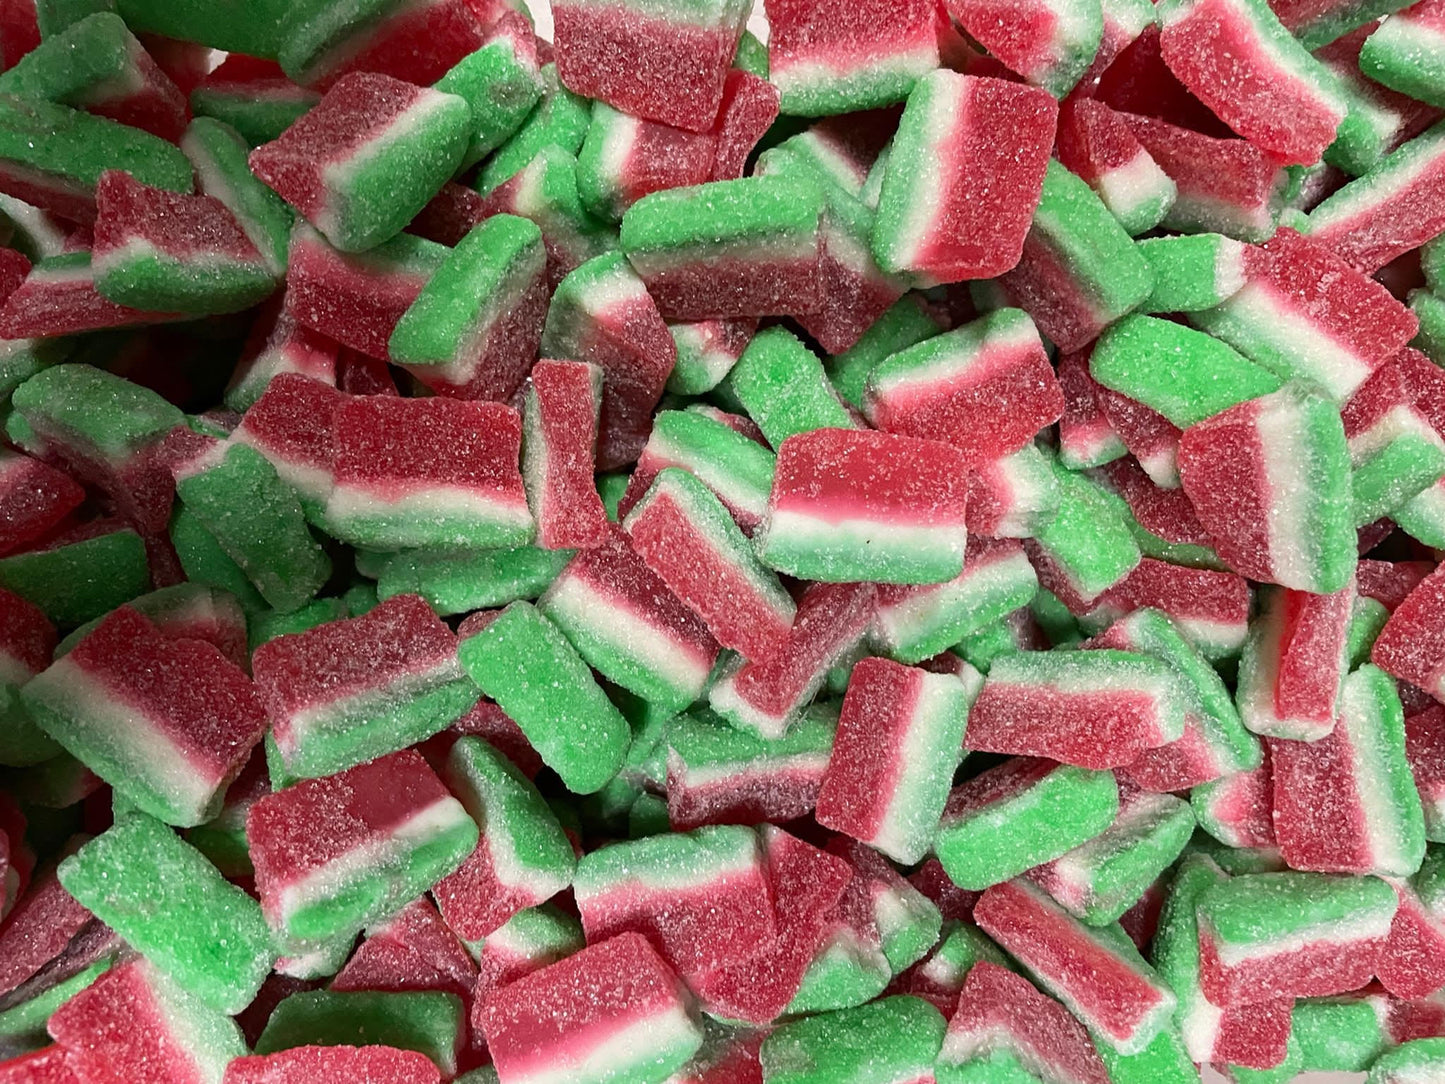 Watermelon slices -100g